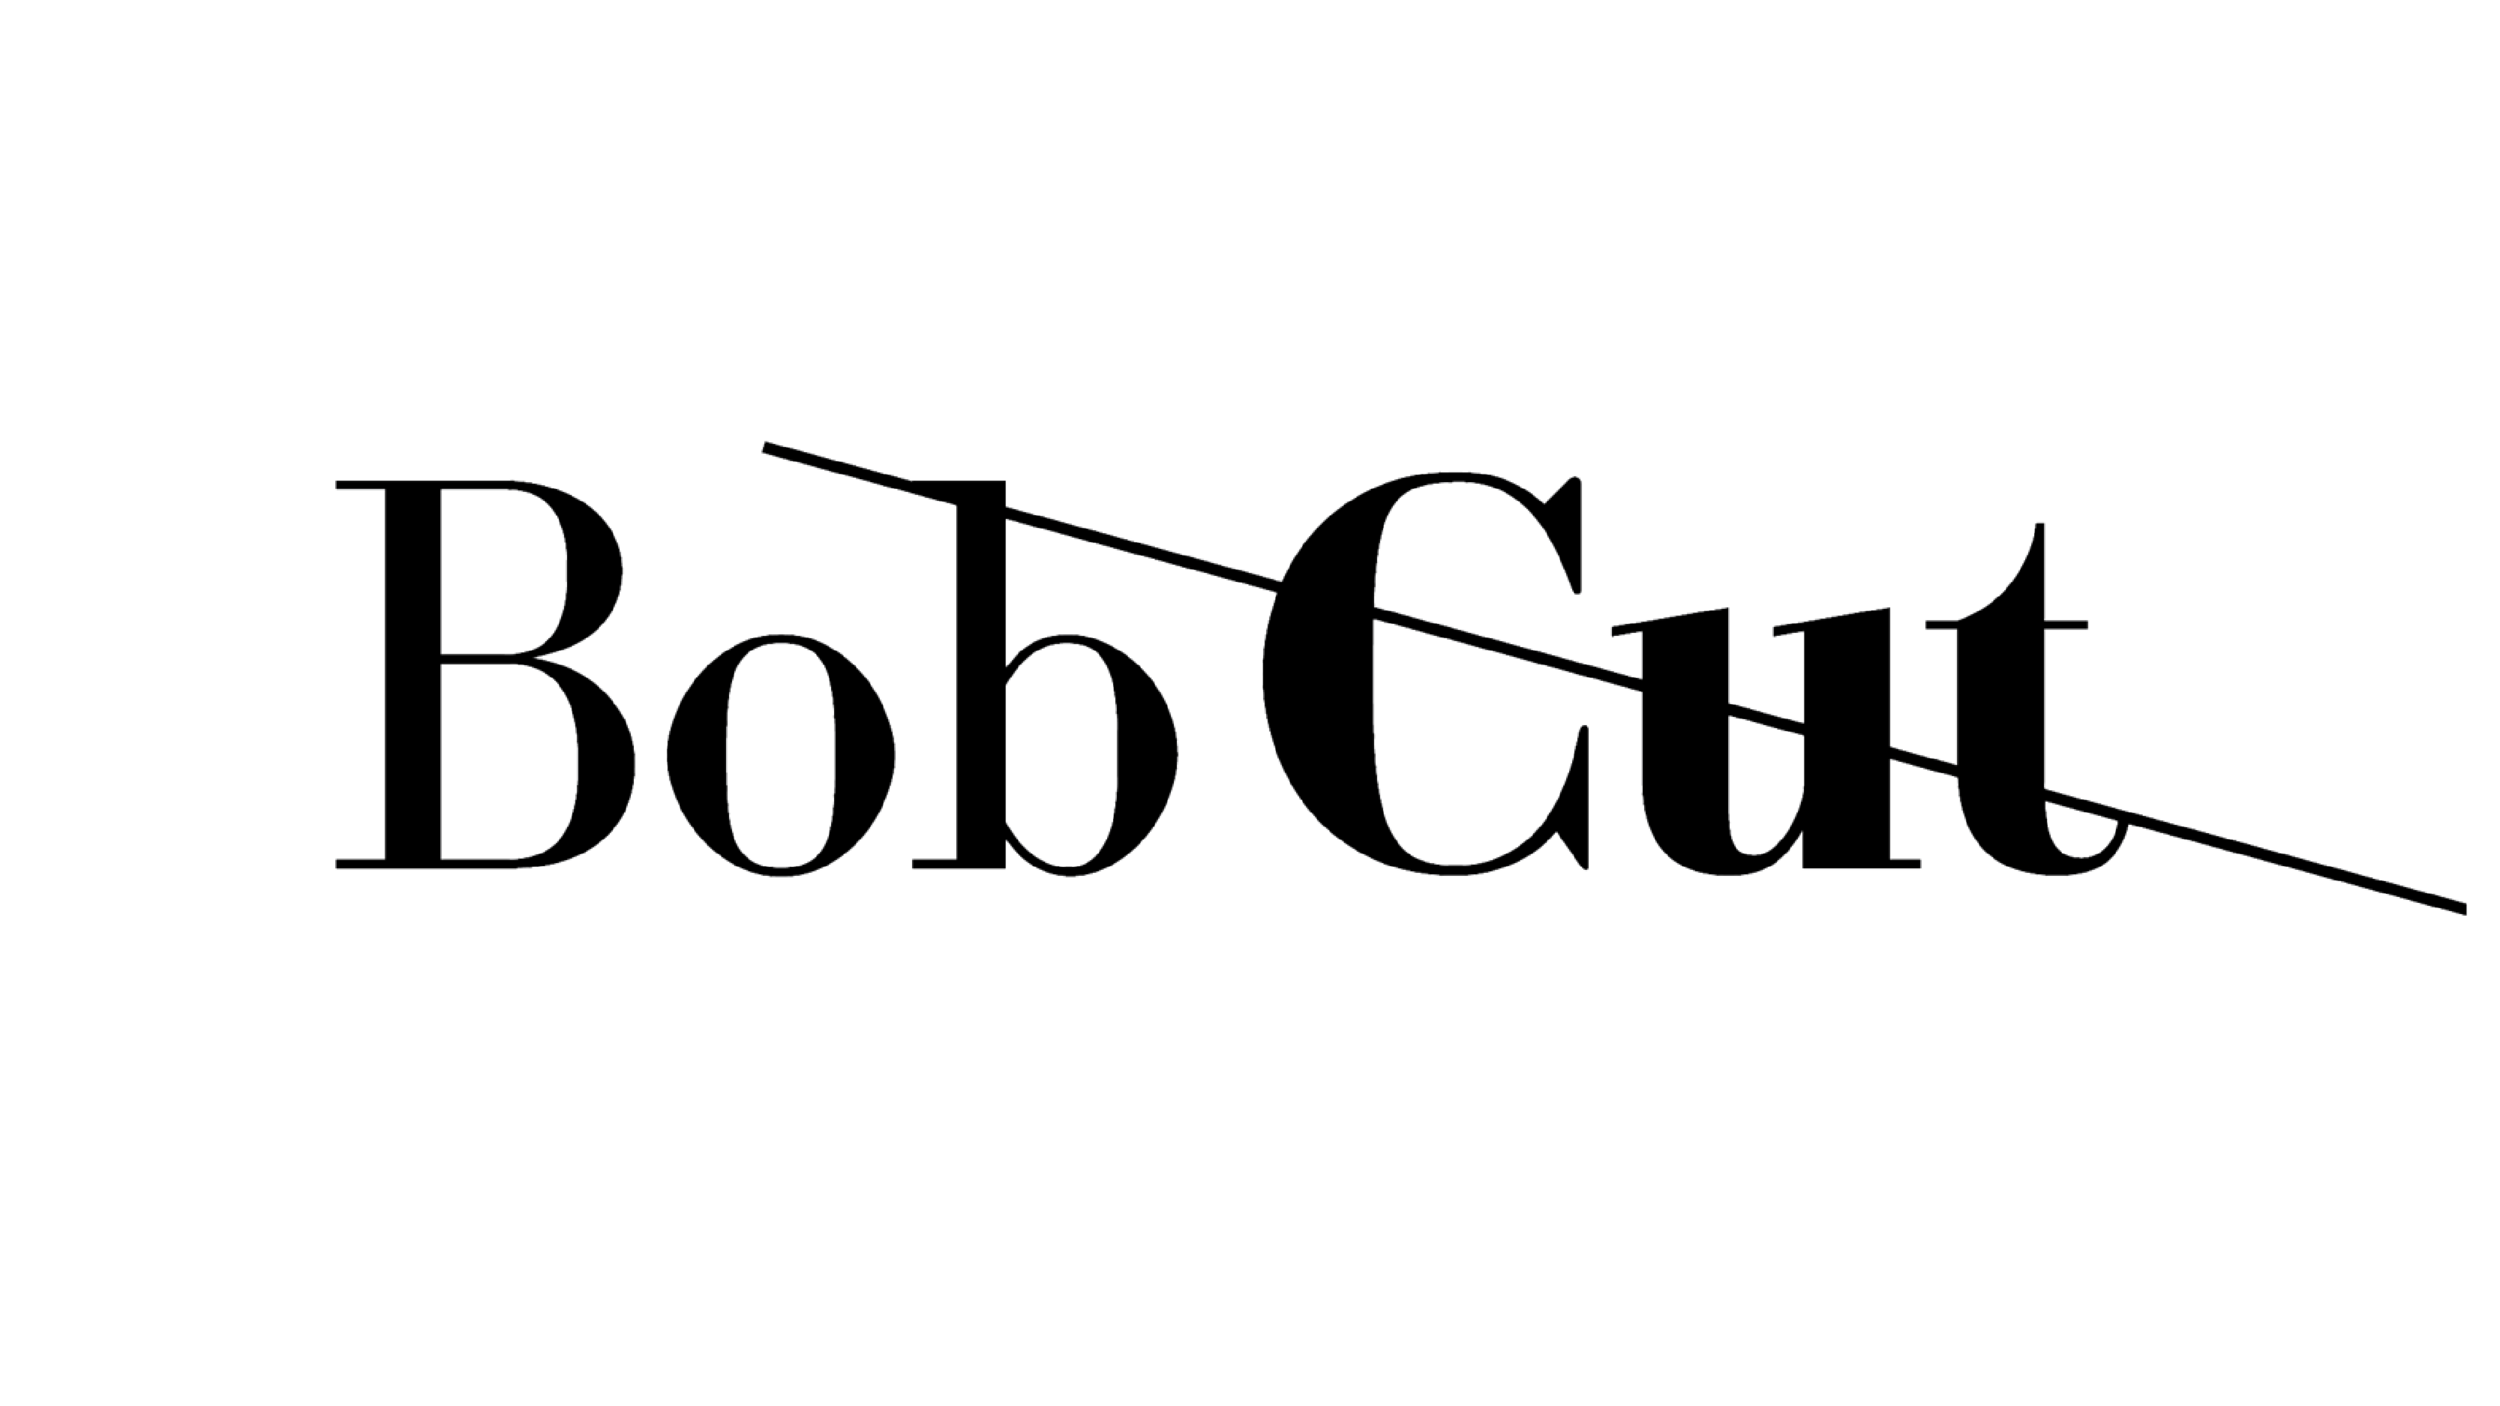 Bobcut logo b&w.png